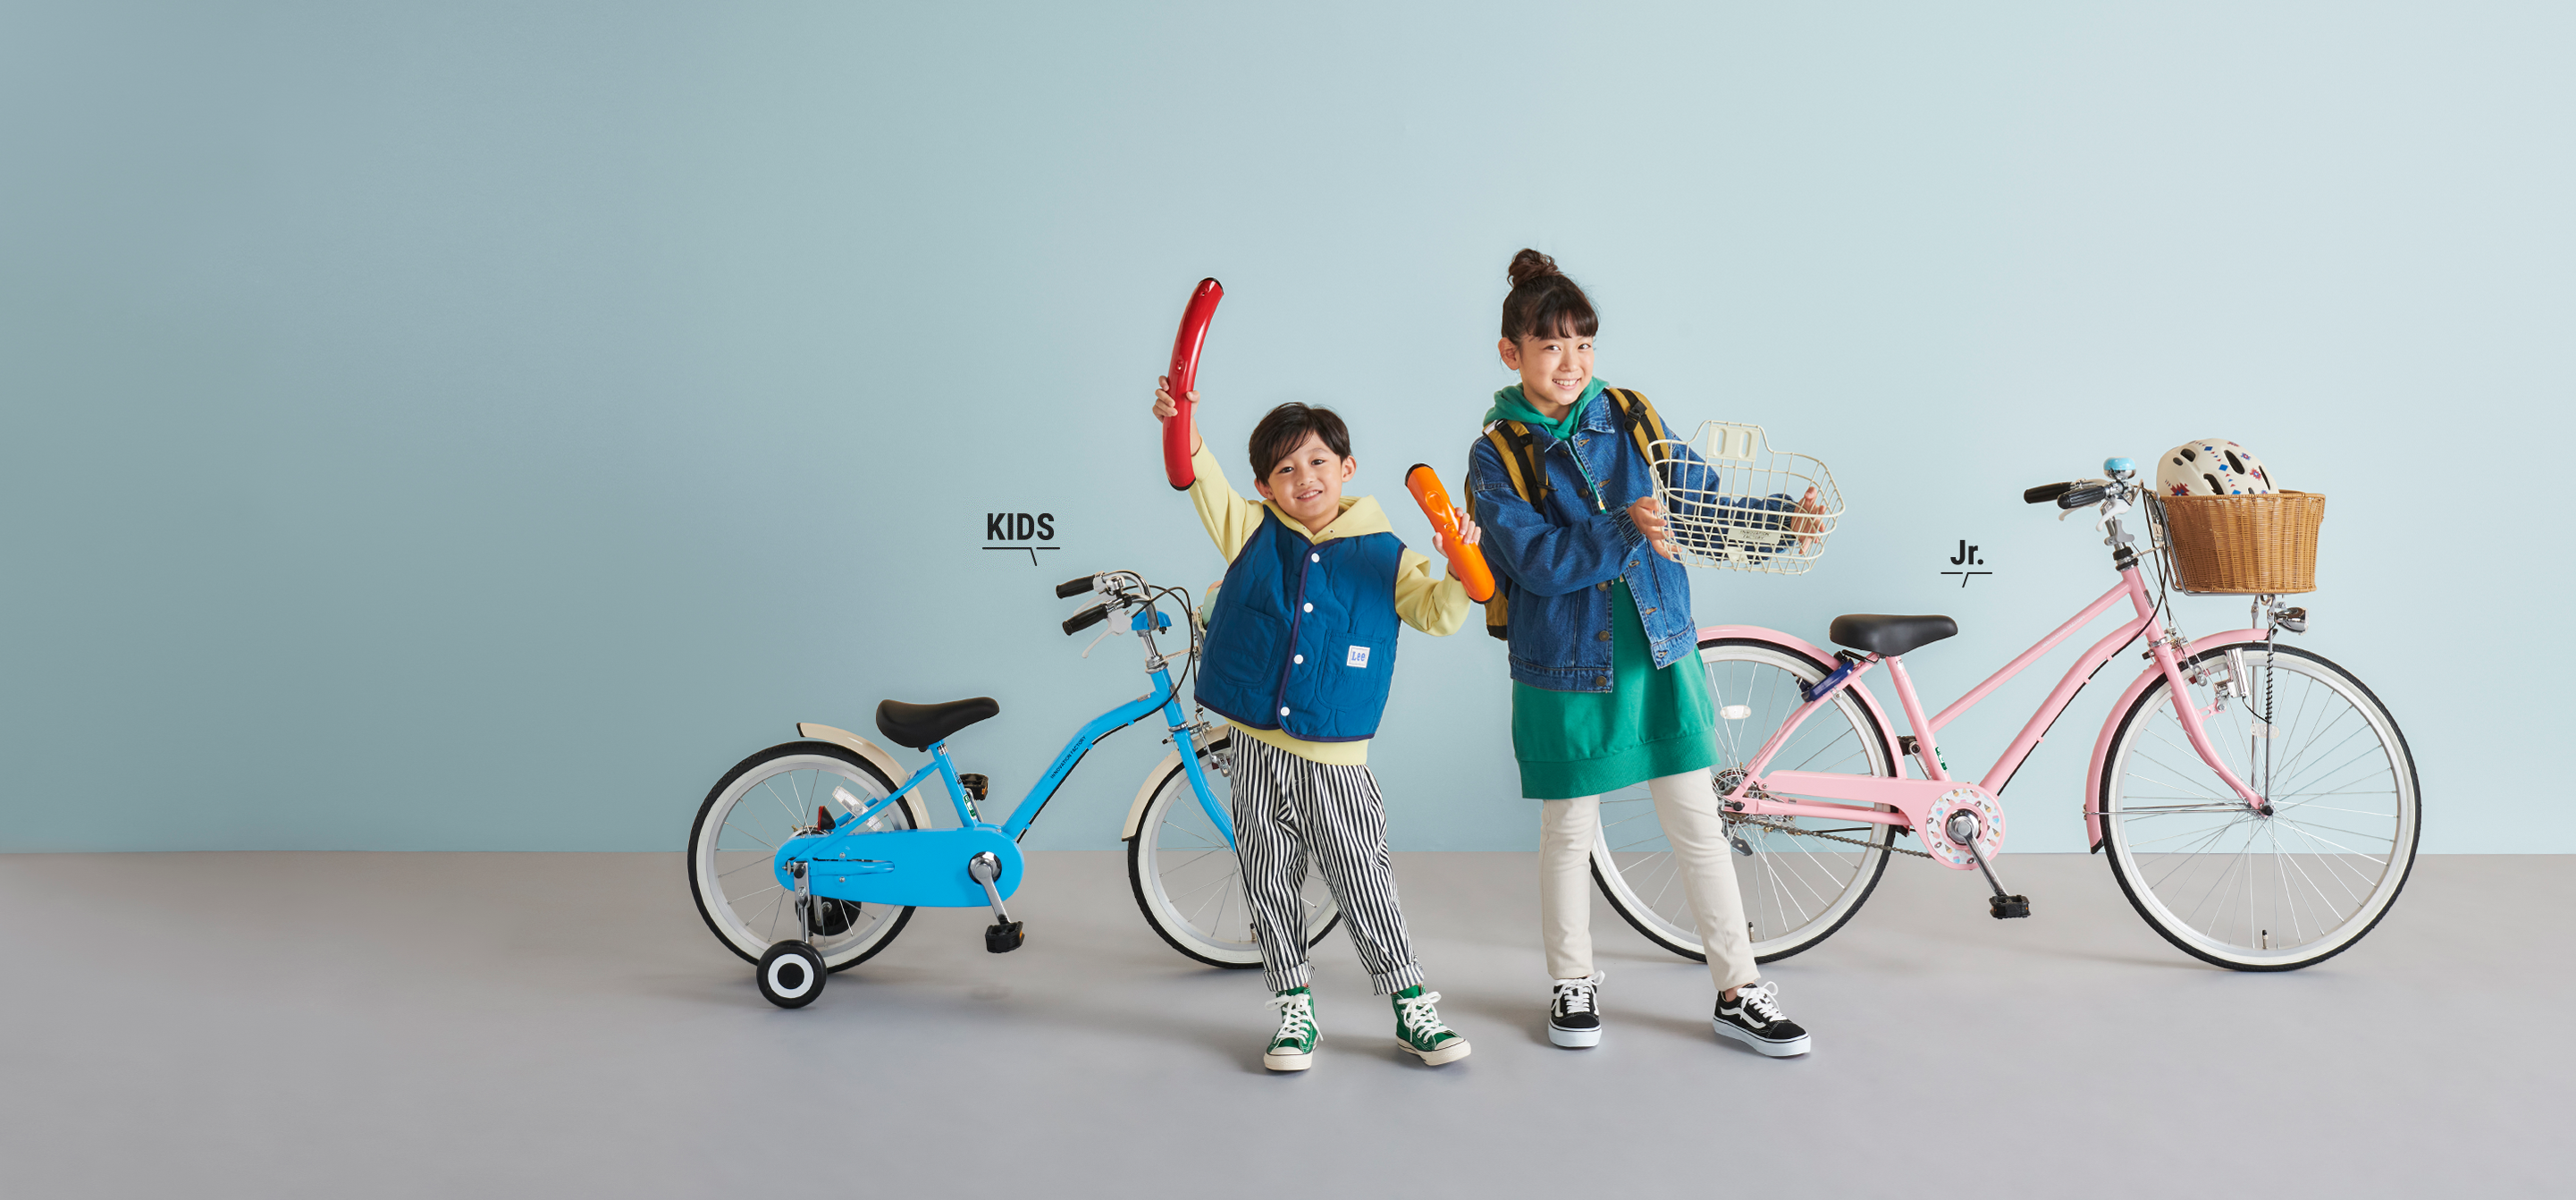 スタイルを大切にするヒトは、自分らしい自転車にカスタマイズ KIDS Jr.